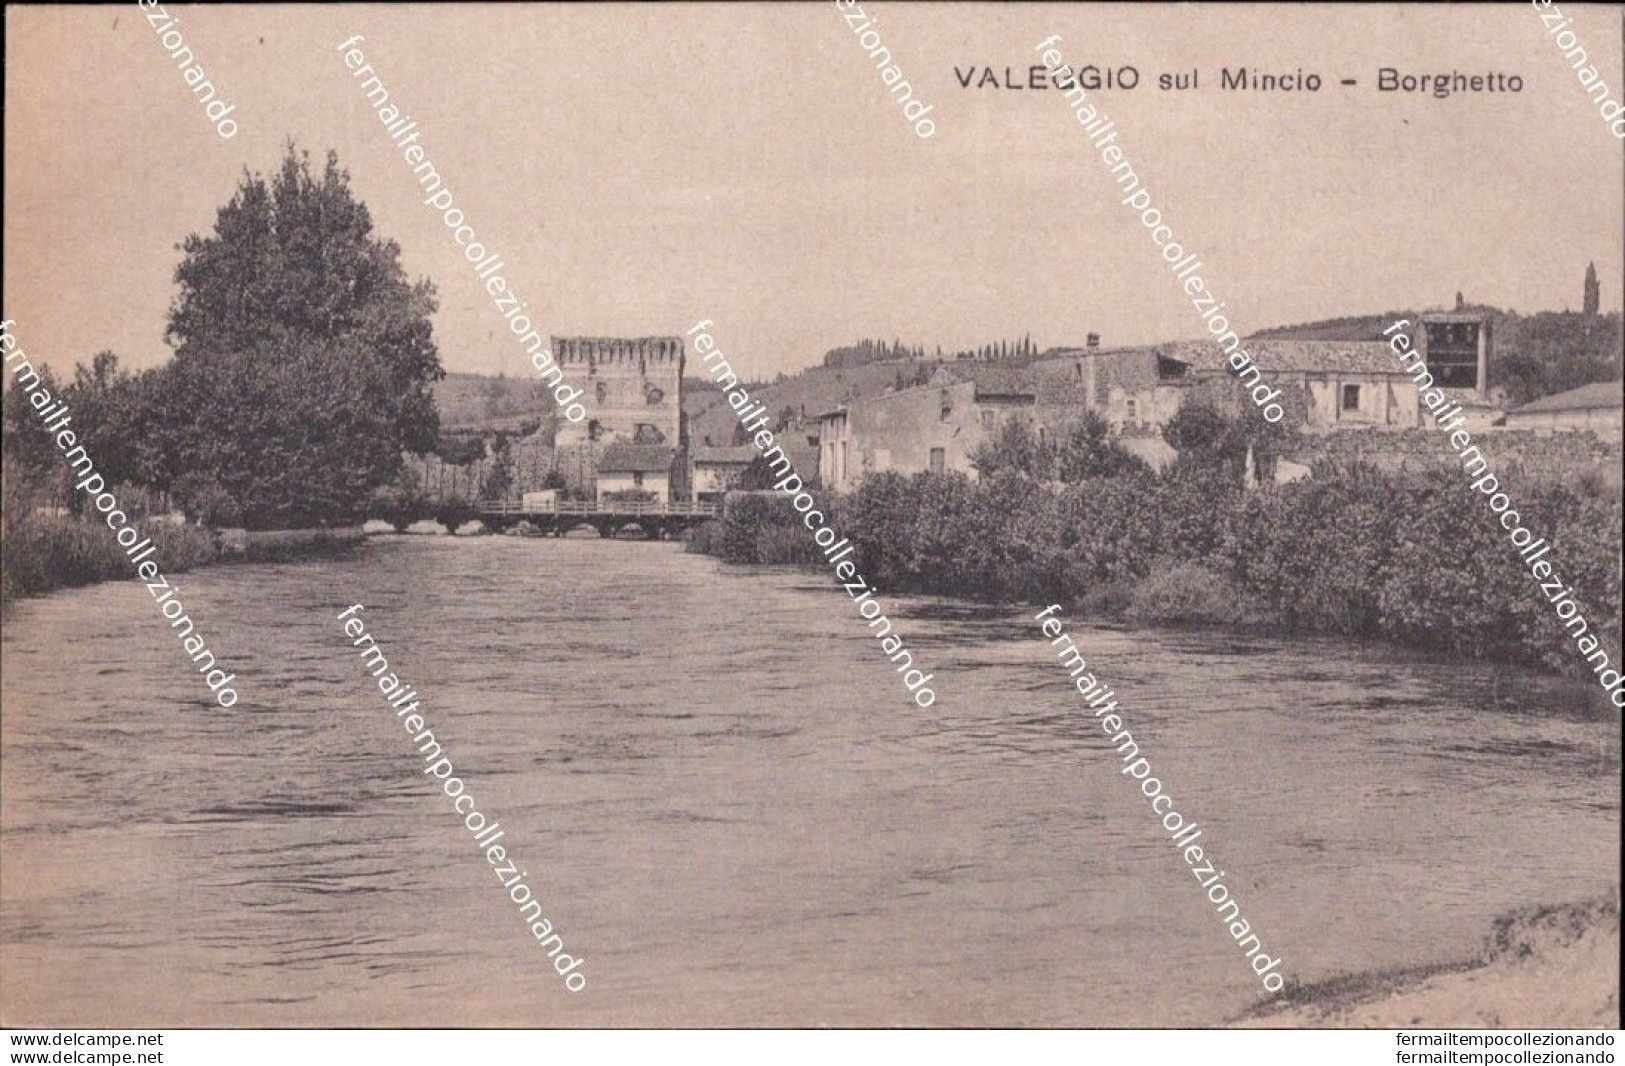 Bl664 Cartolina Valeggio Sul Mincio Borghetto Provincia Di Verona Veneto - Verona